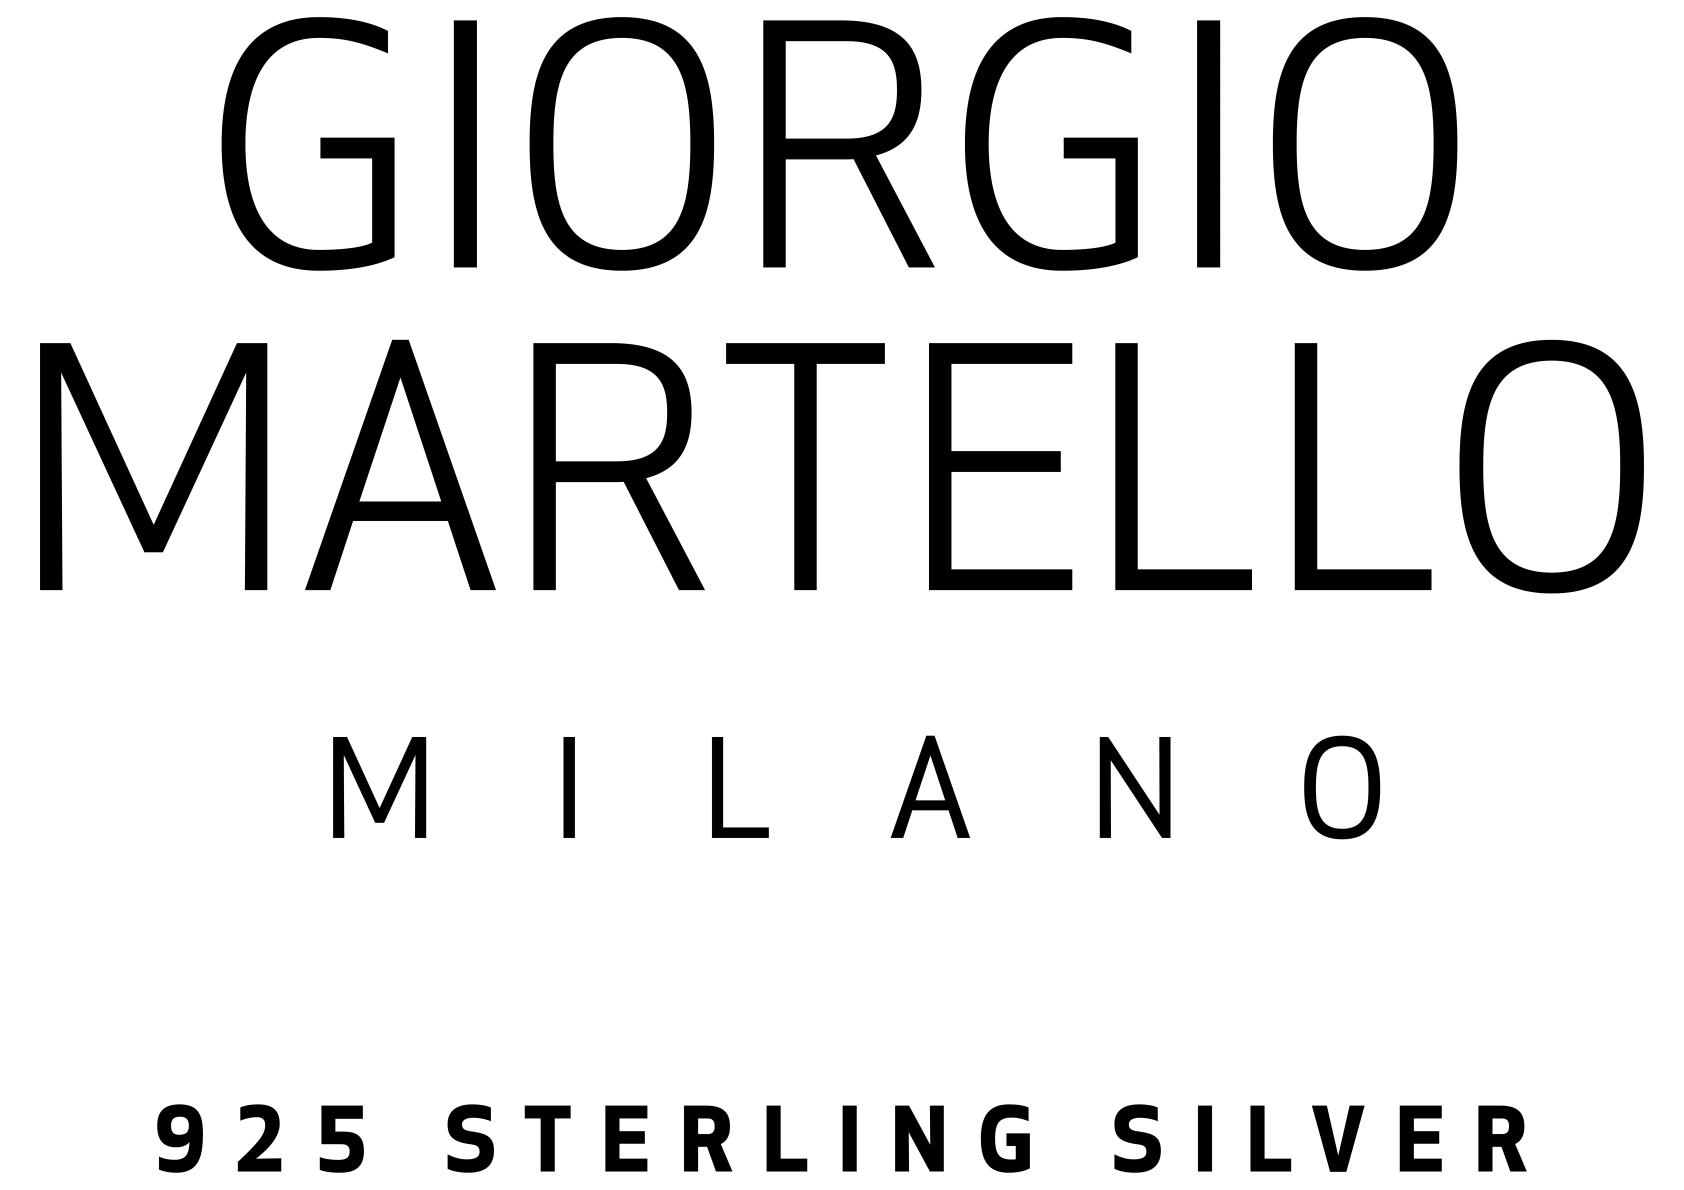 Giorgio Martello Milano